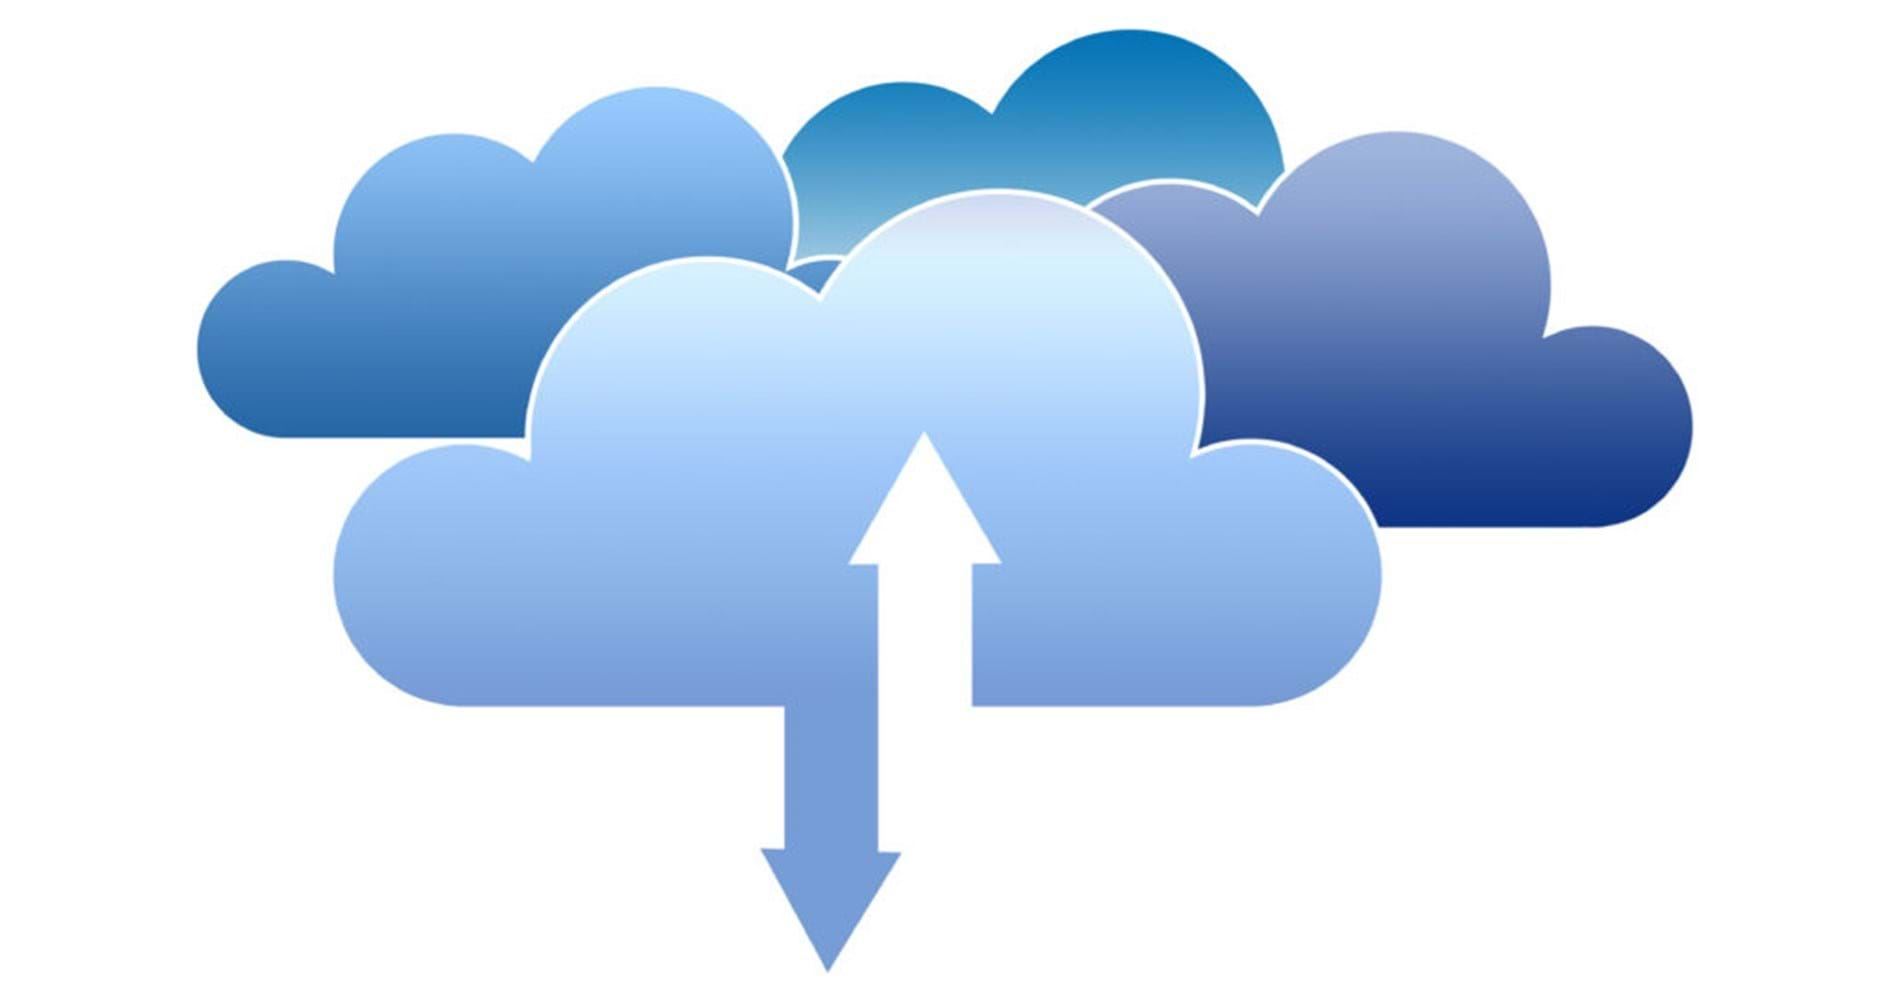 ERP: OnPremise, Cloud/SaaS oder Hybrid?